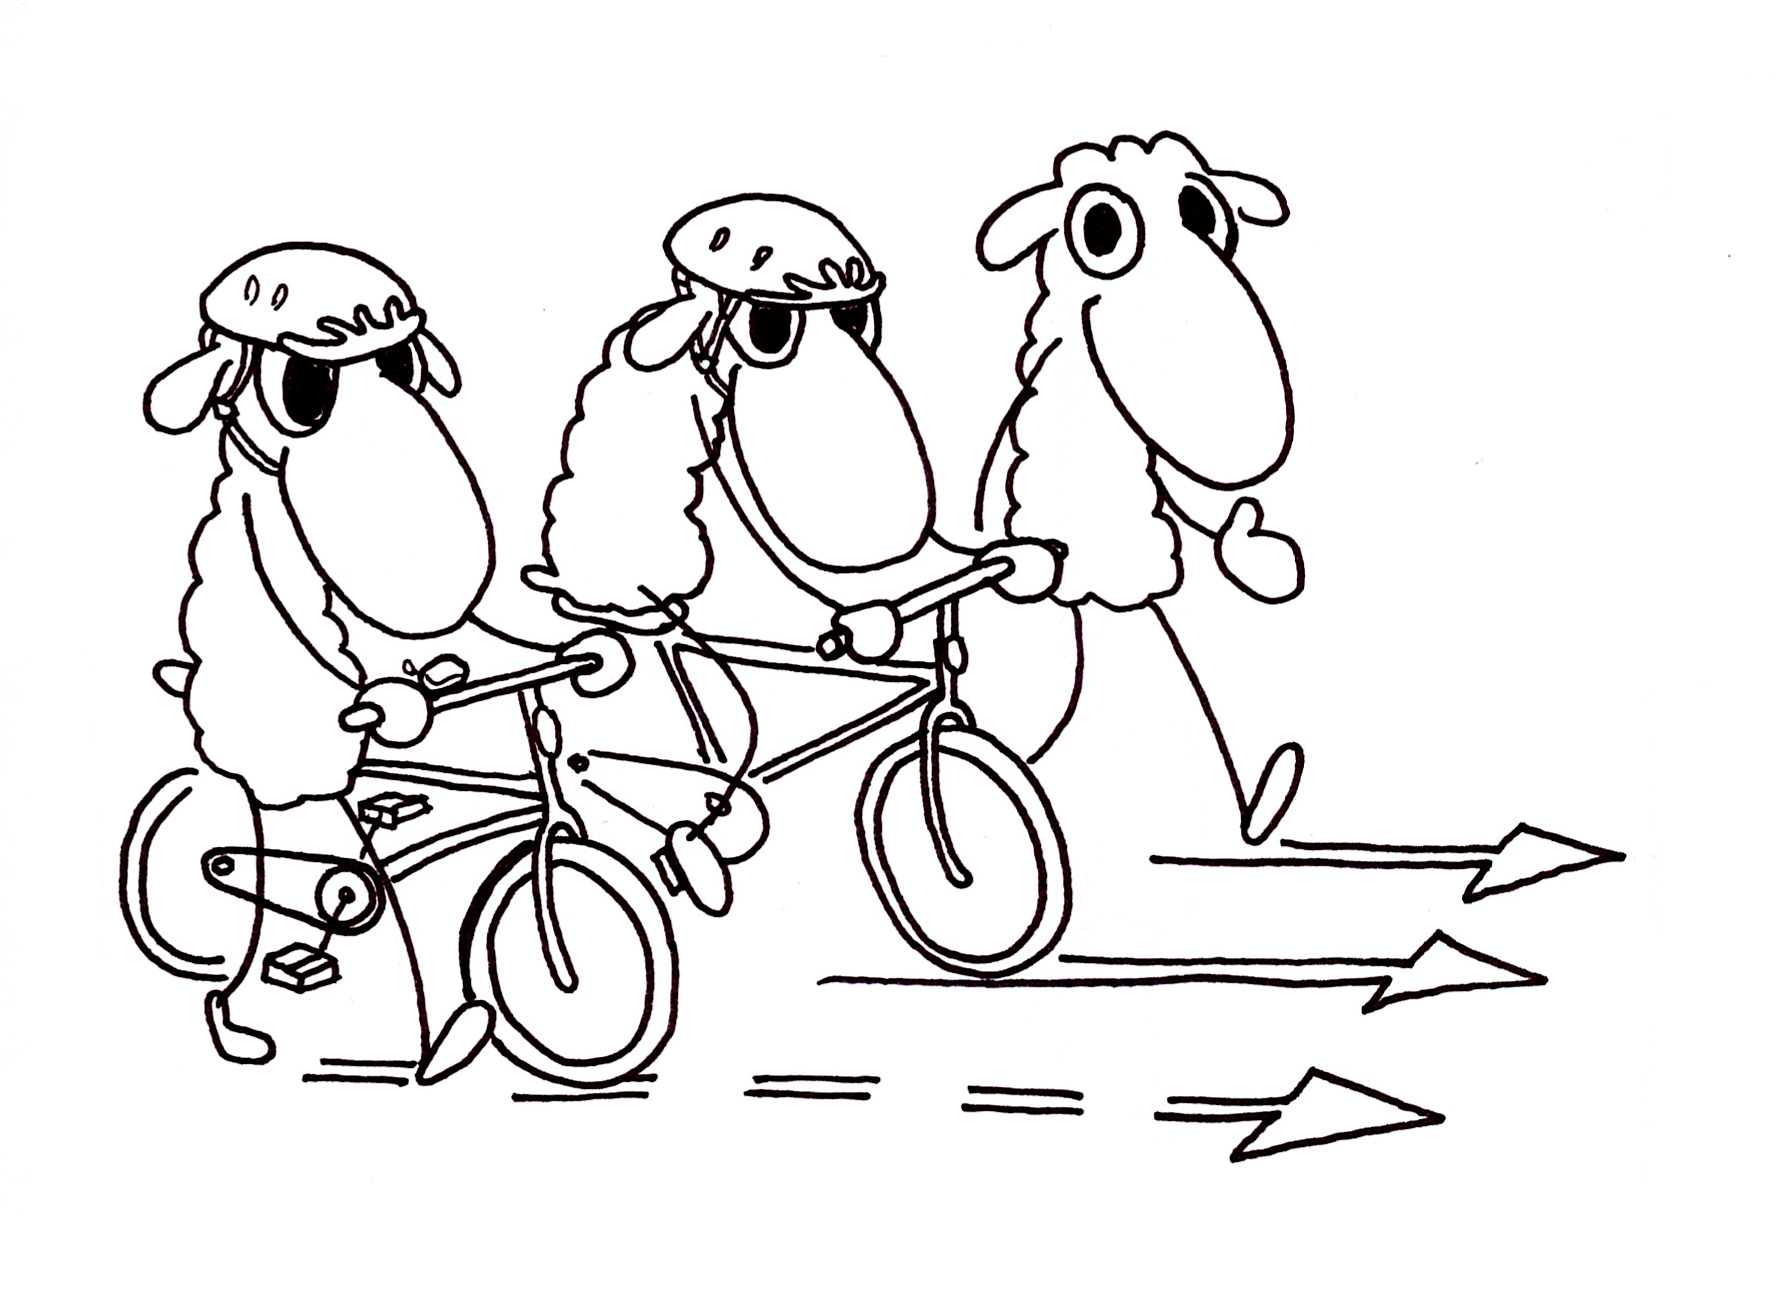 Jalankulkija, taluttaja ja polkupyöräilijä